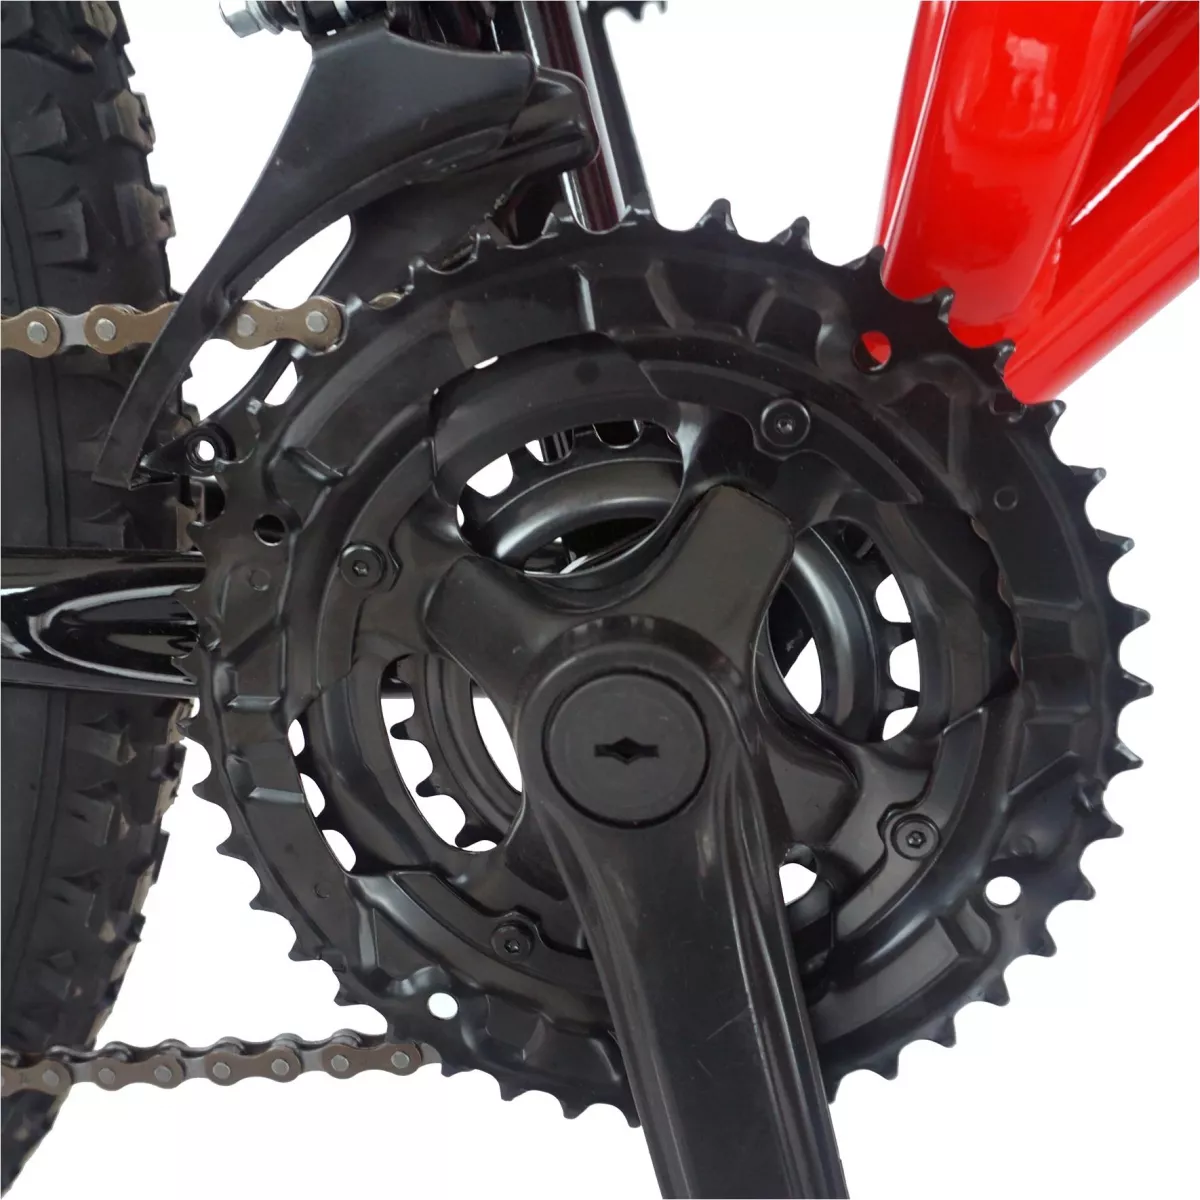 Bicicleta MTB-FS  26" CARPAT ZTX C2642A, cadru otel, 18 viteze, culoare  rosu/negru - RESIGILATA